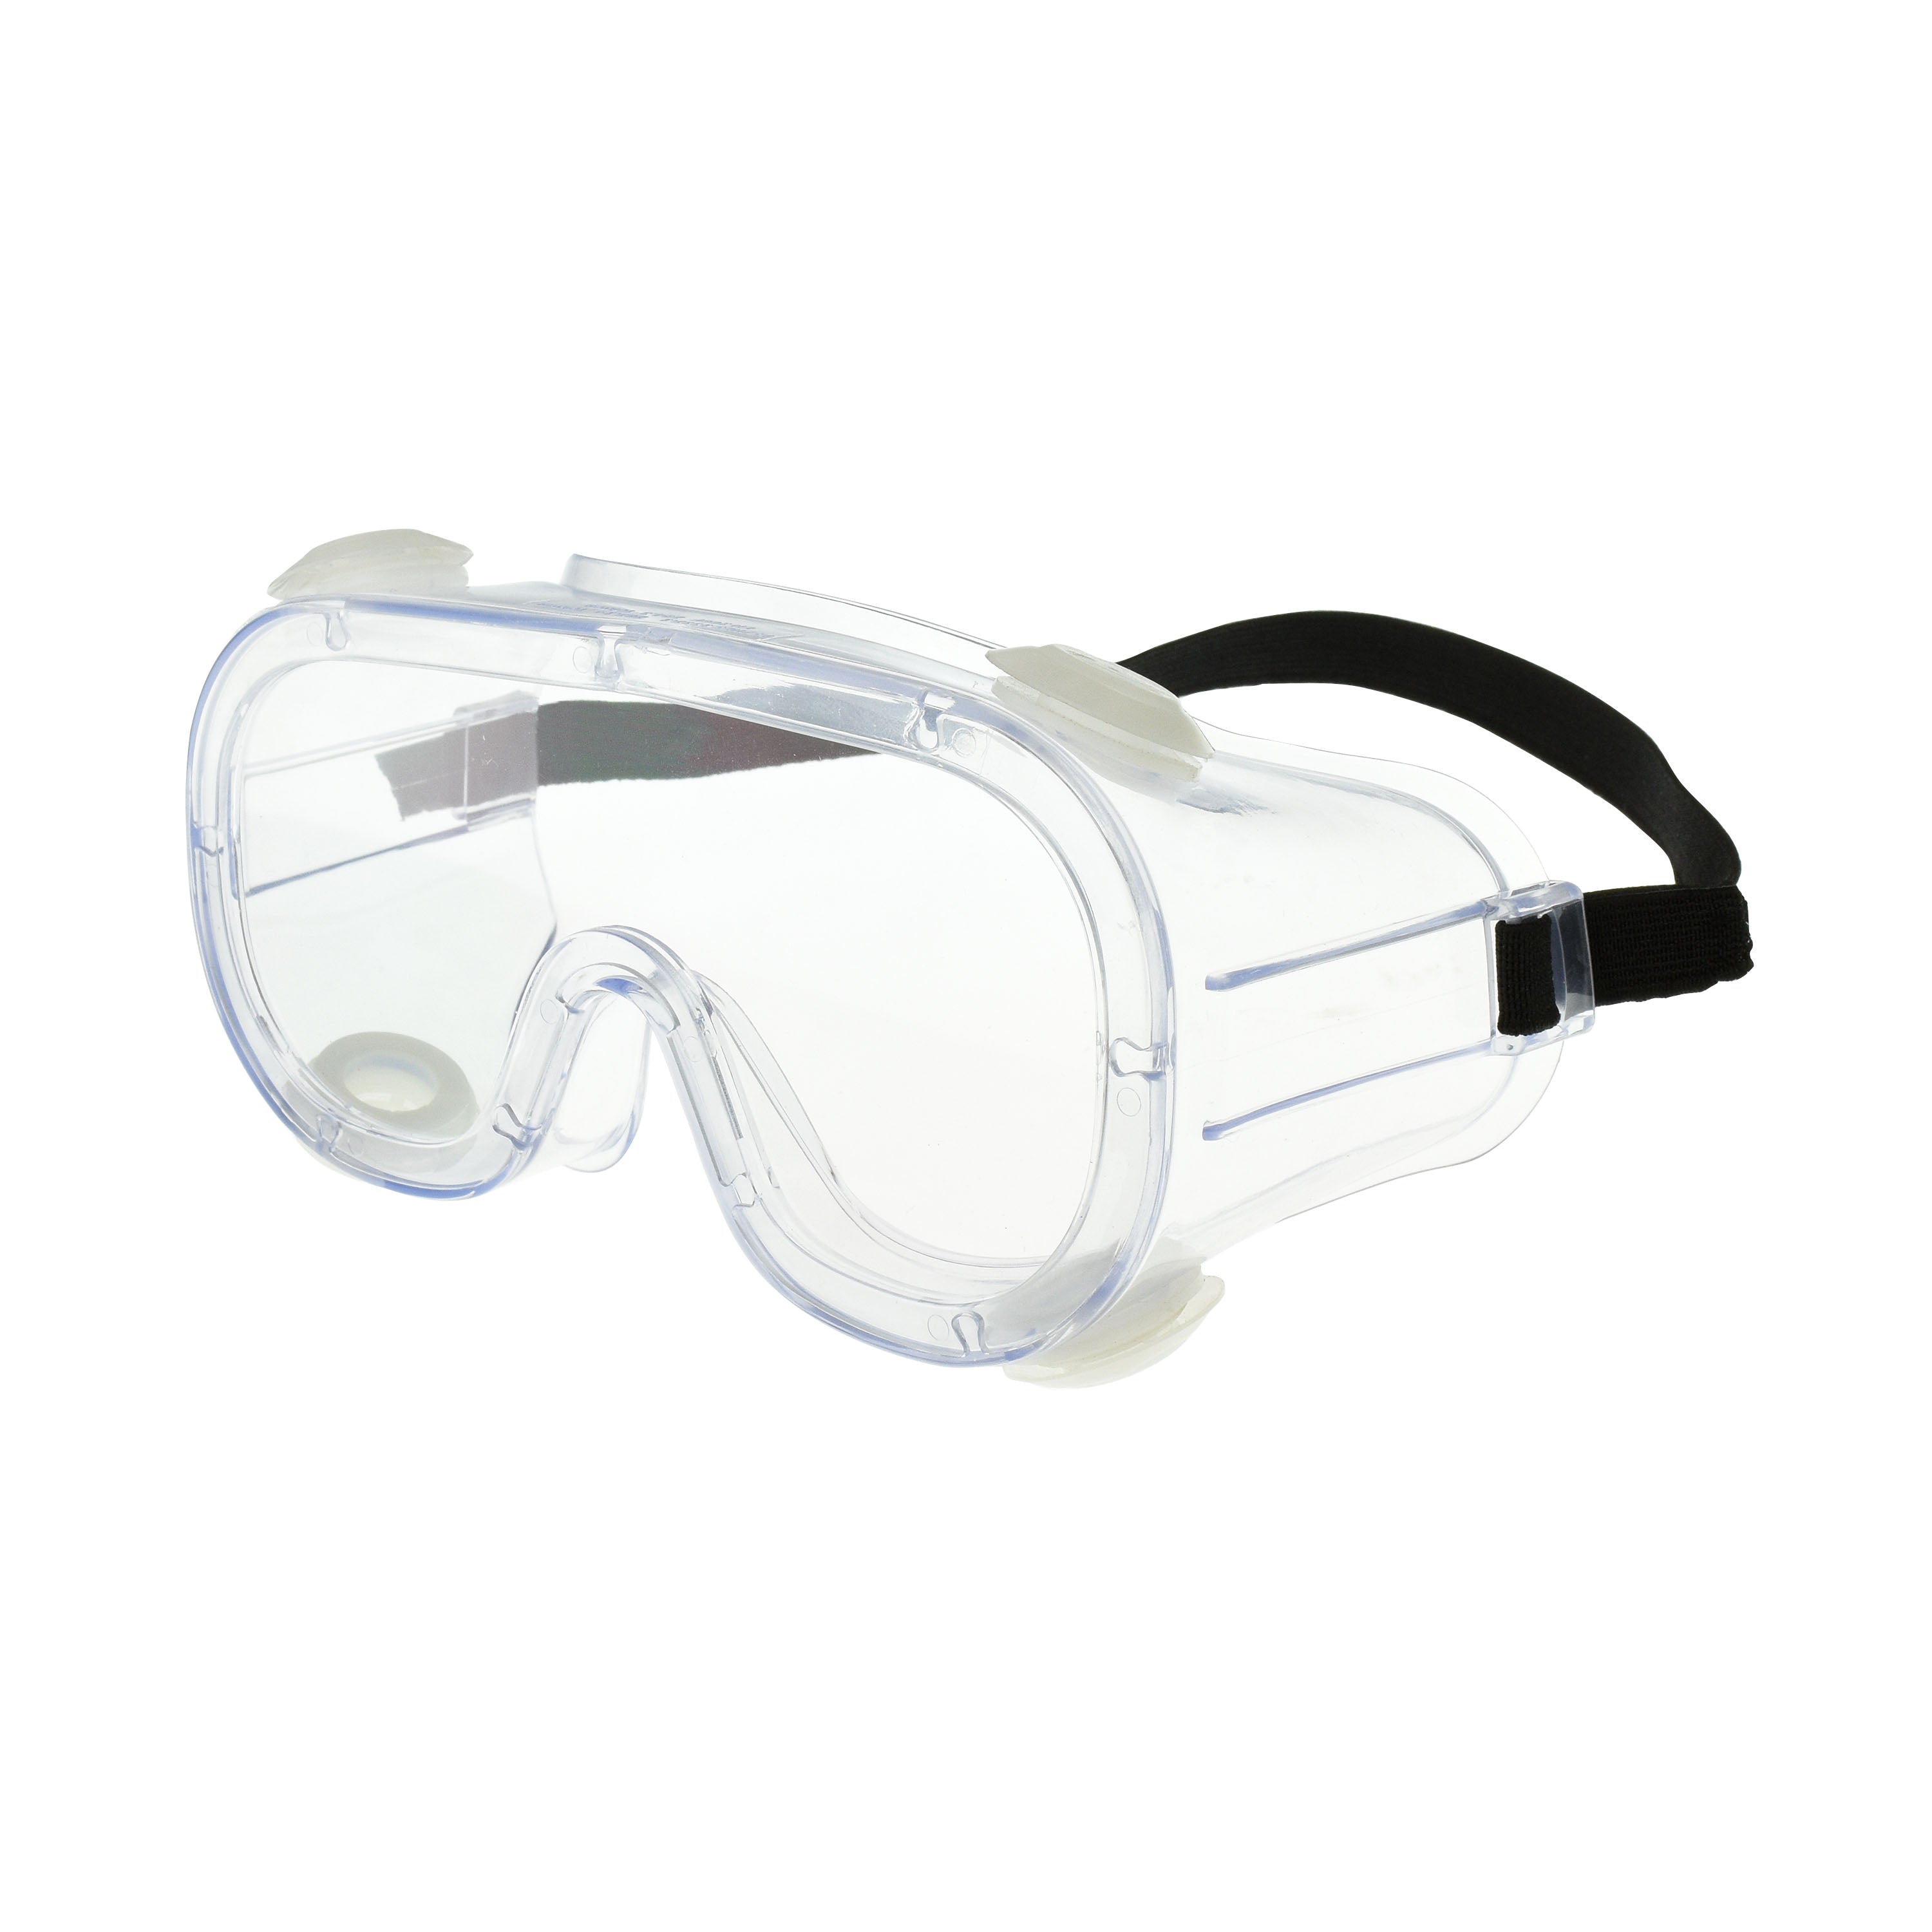 Gafas de seguridad contra salpicaduras químicas CS01